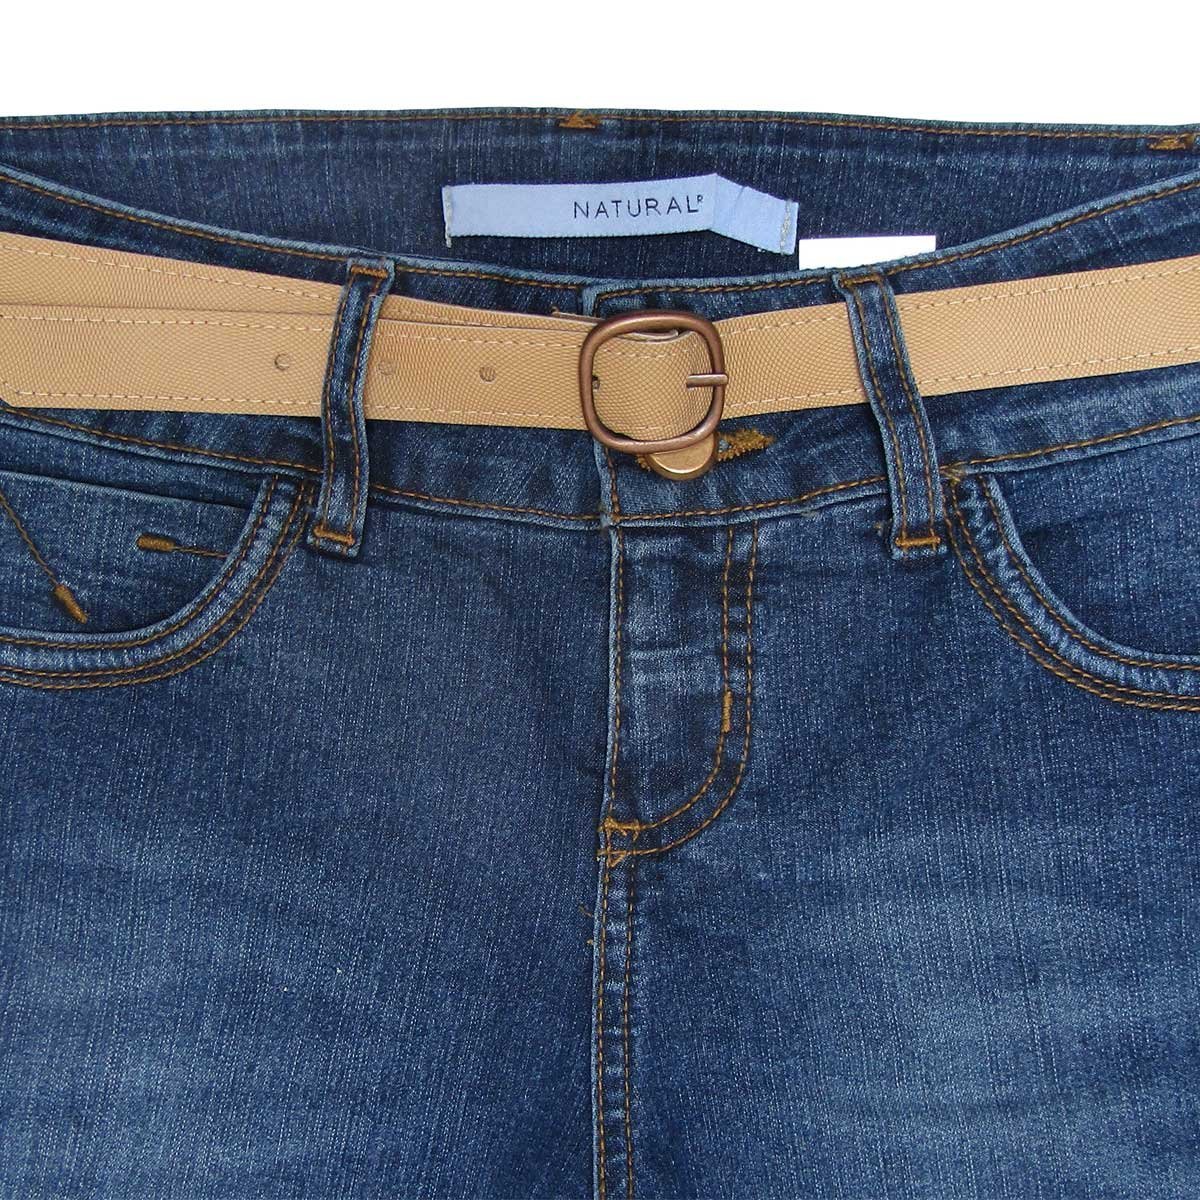 Jeans con Cinturón Natural